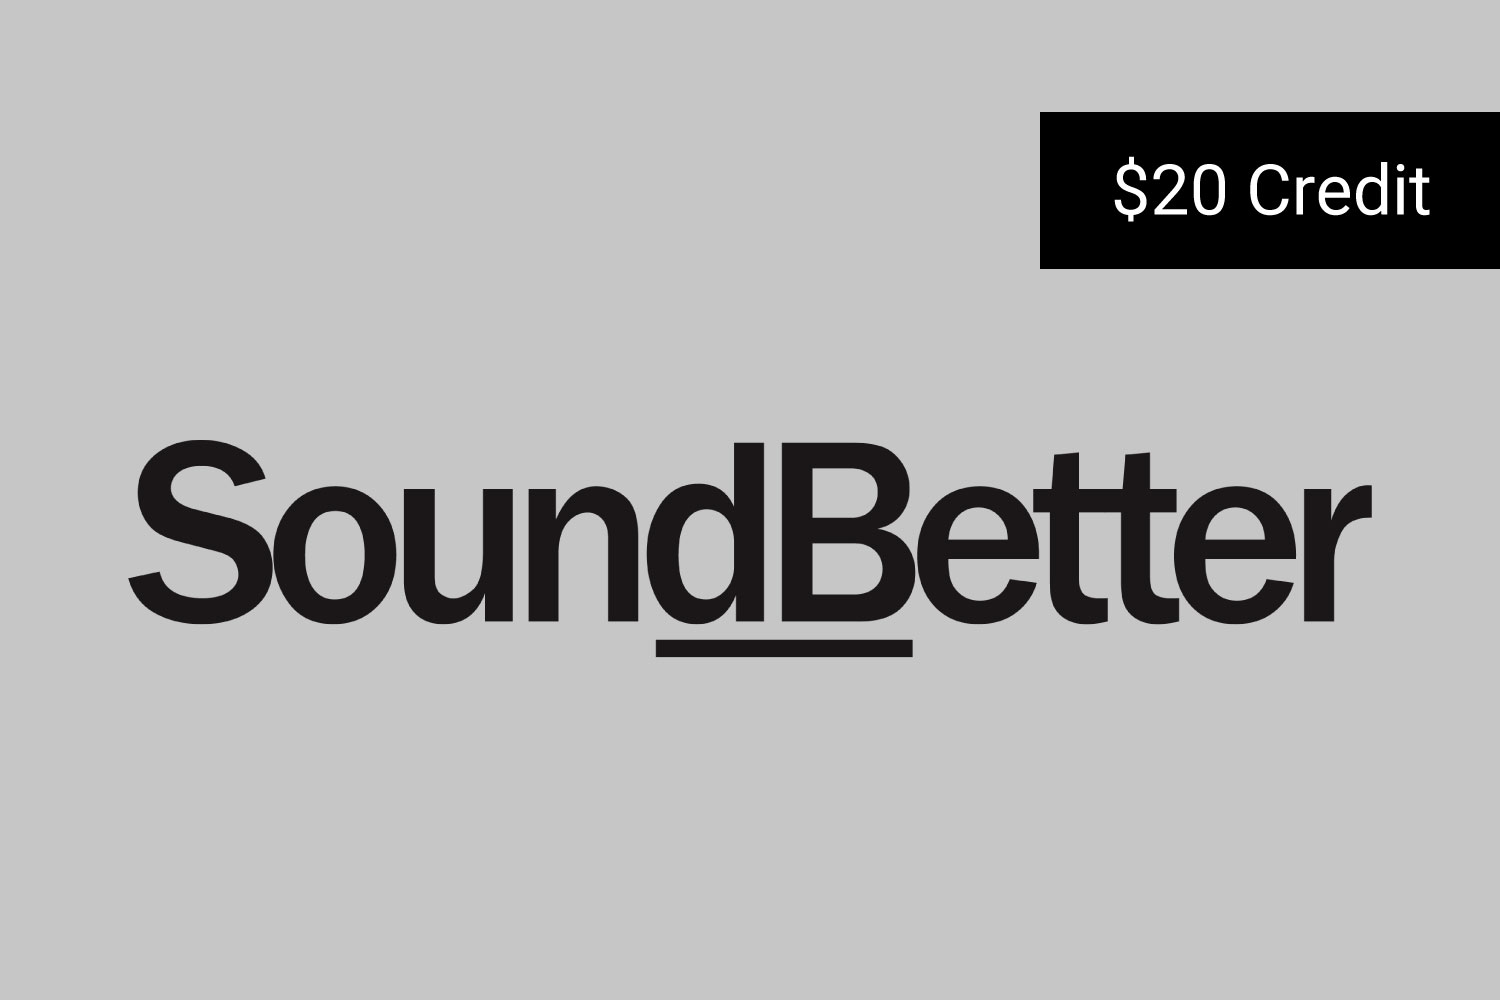 SoundBetter Marketplace Participant